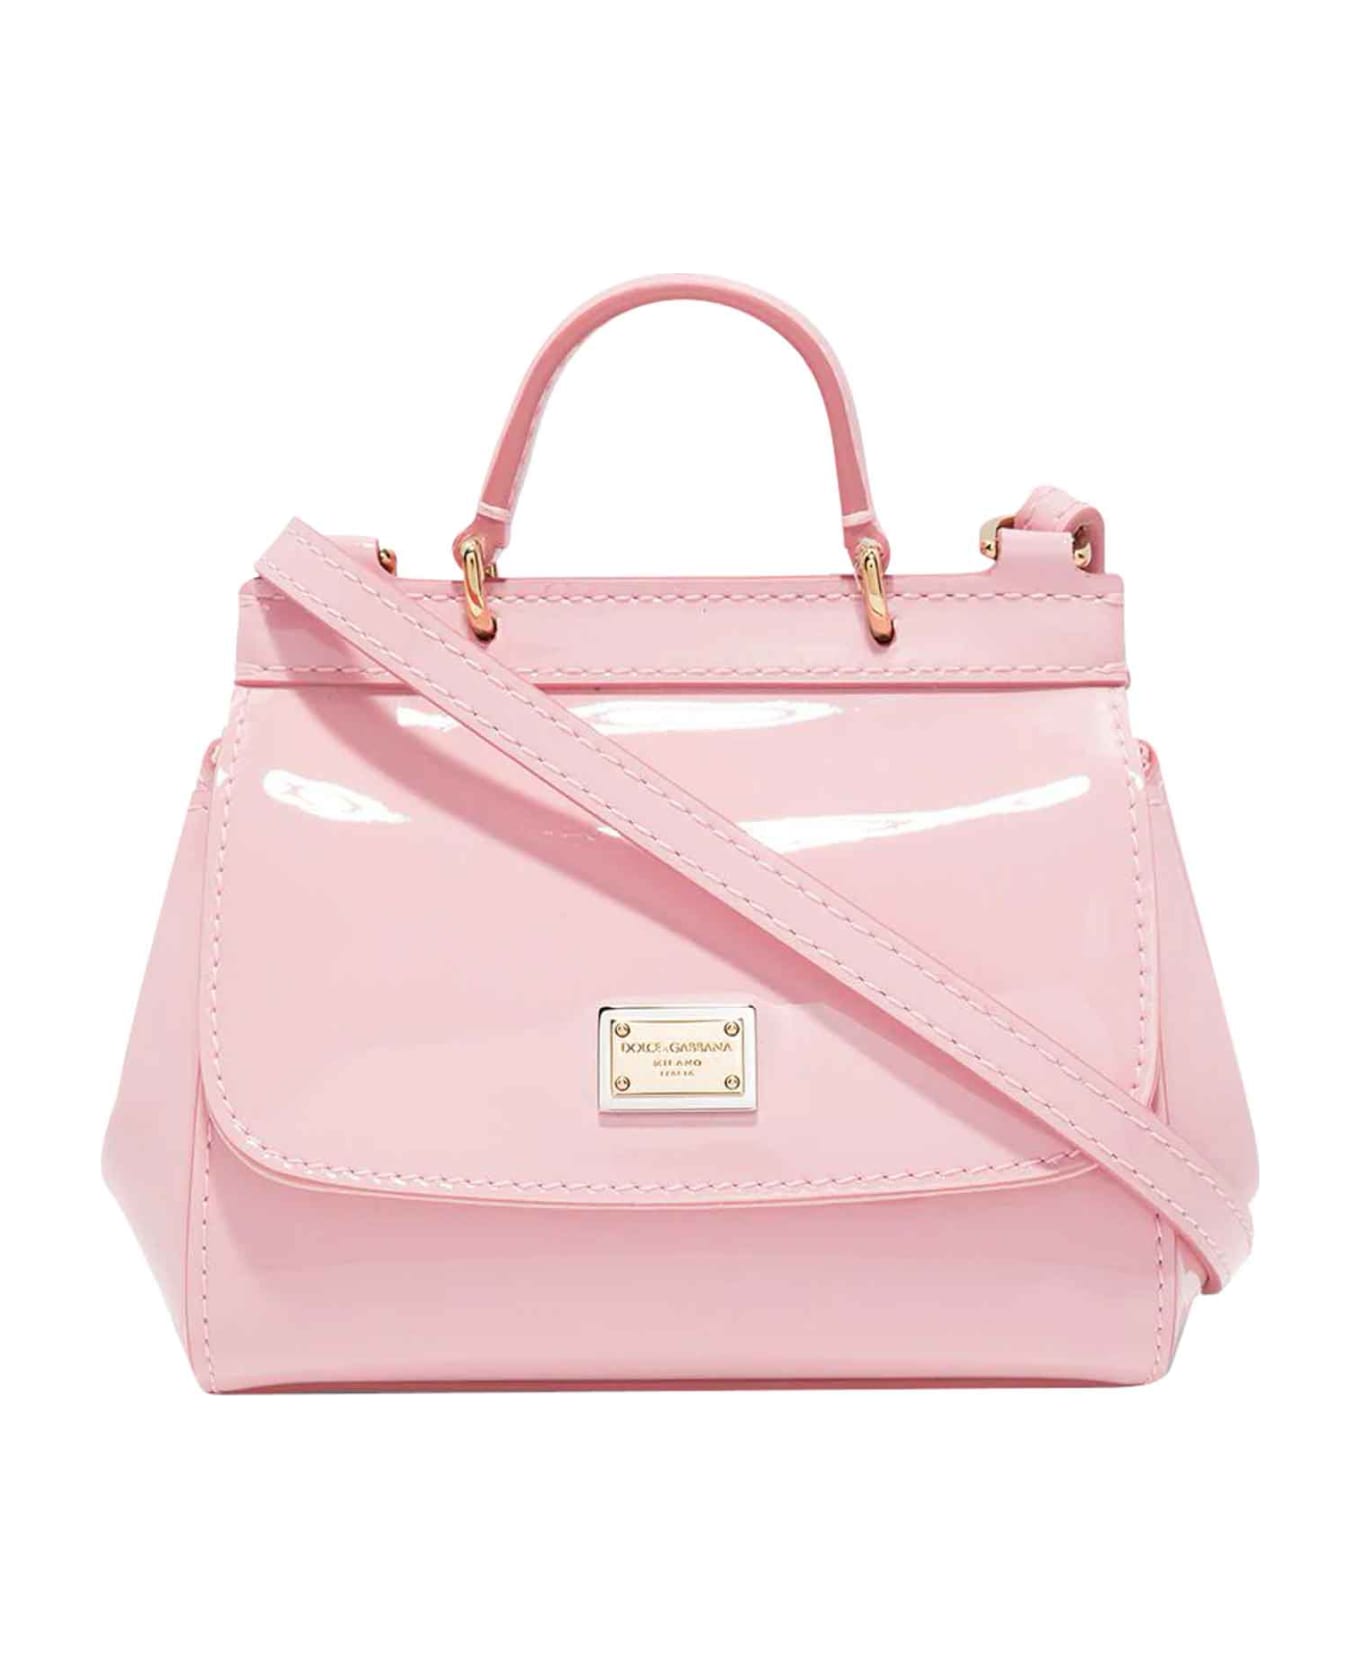 Dolce Shorts & Gabbana Pink Tote Bag - Rosa